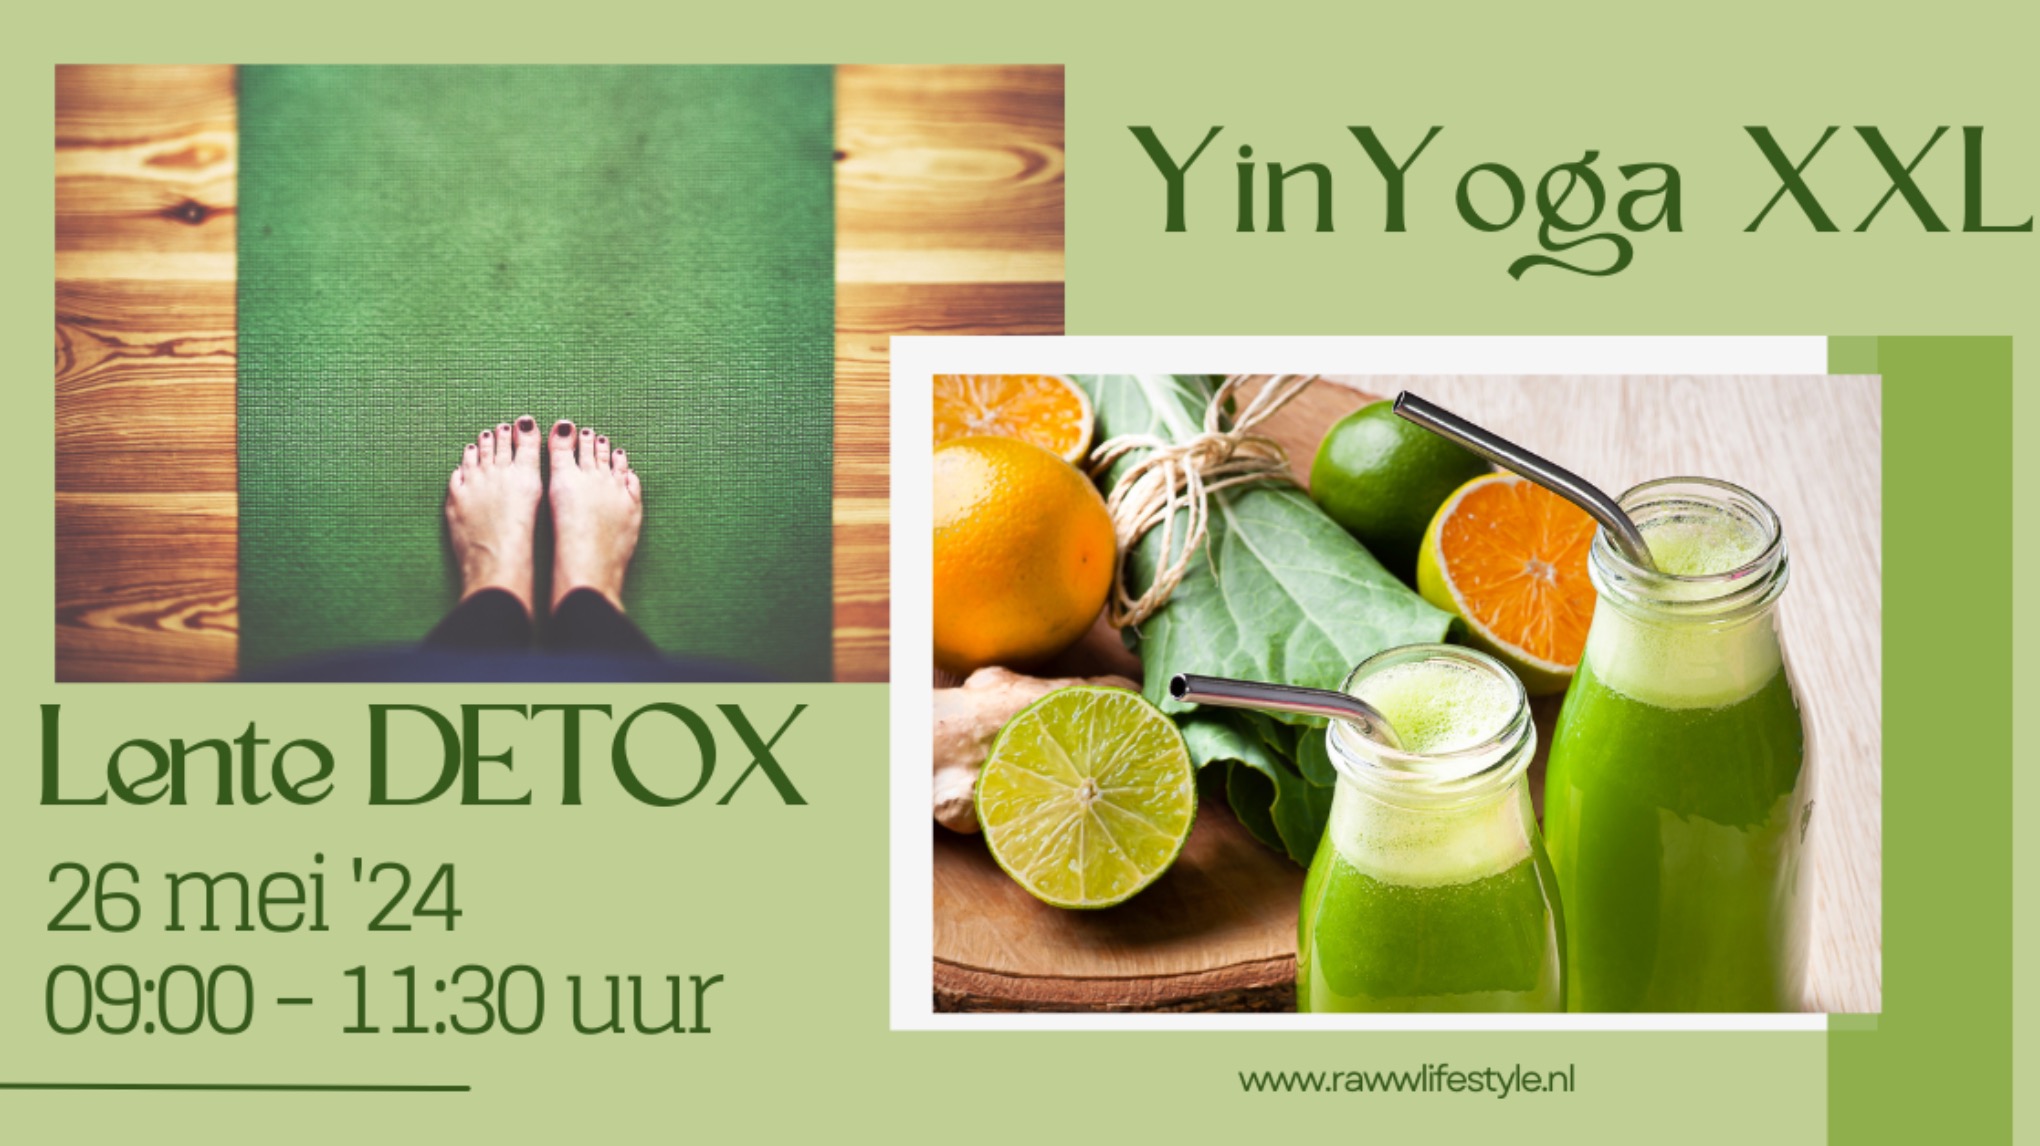 Yin yoga XXL - Lente detox! 26 mei '24